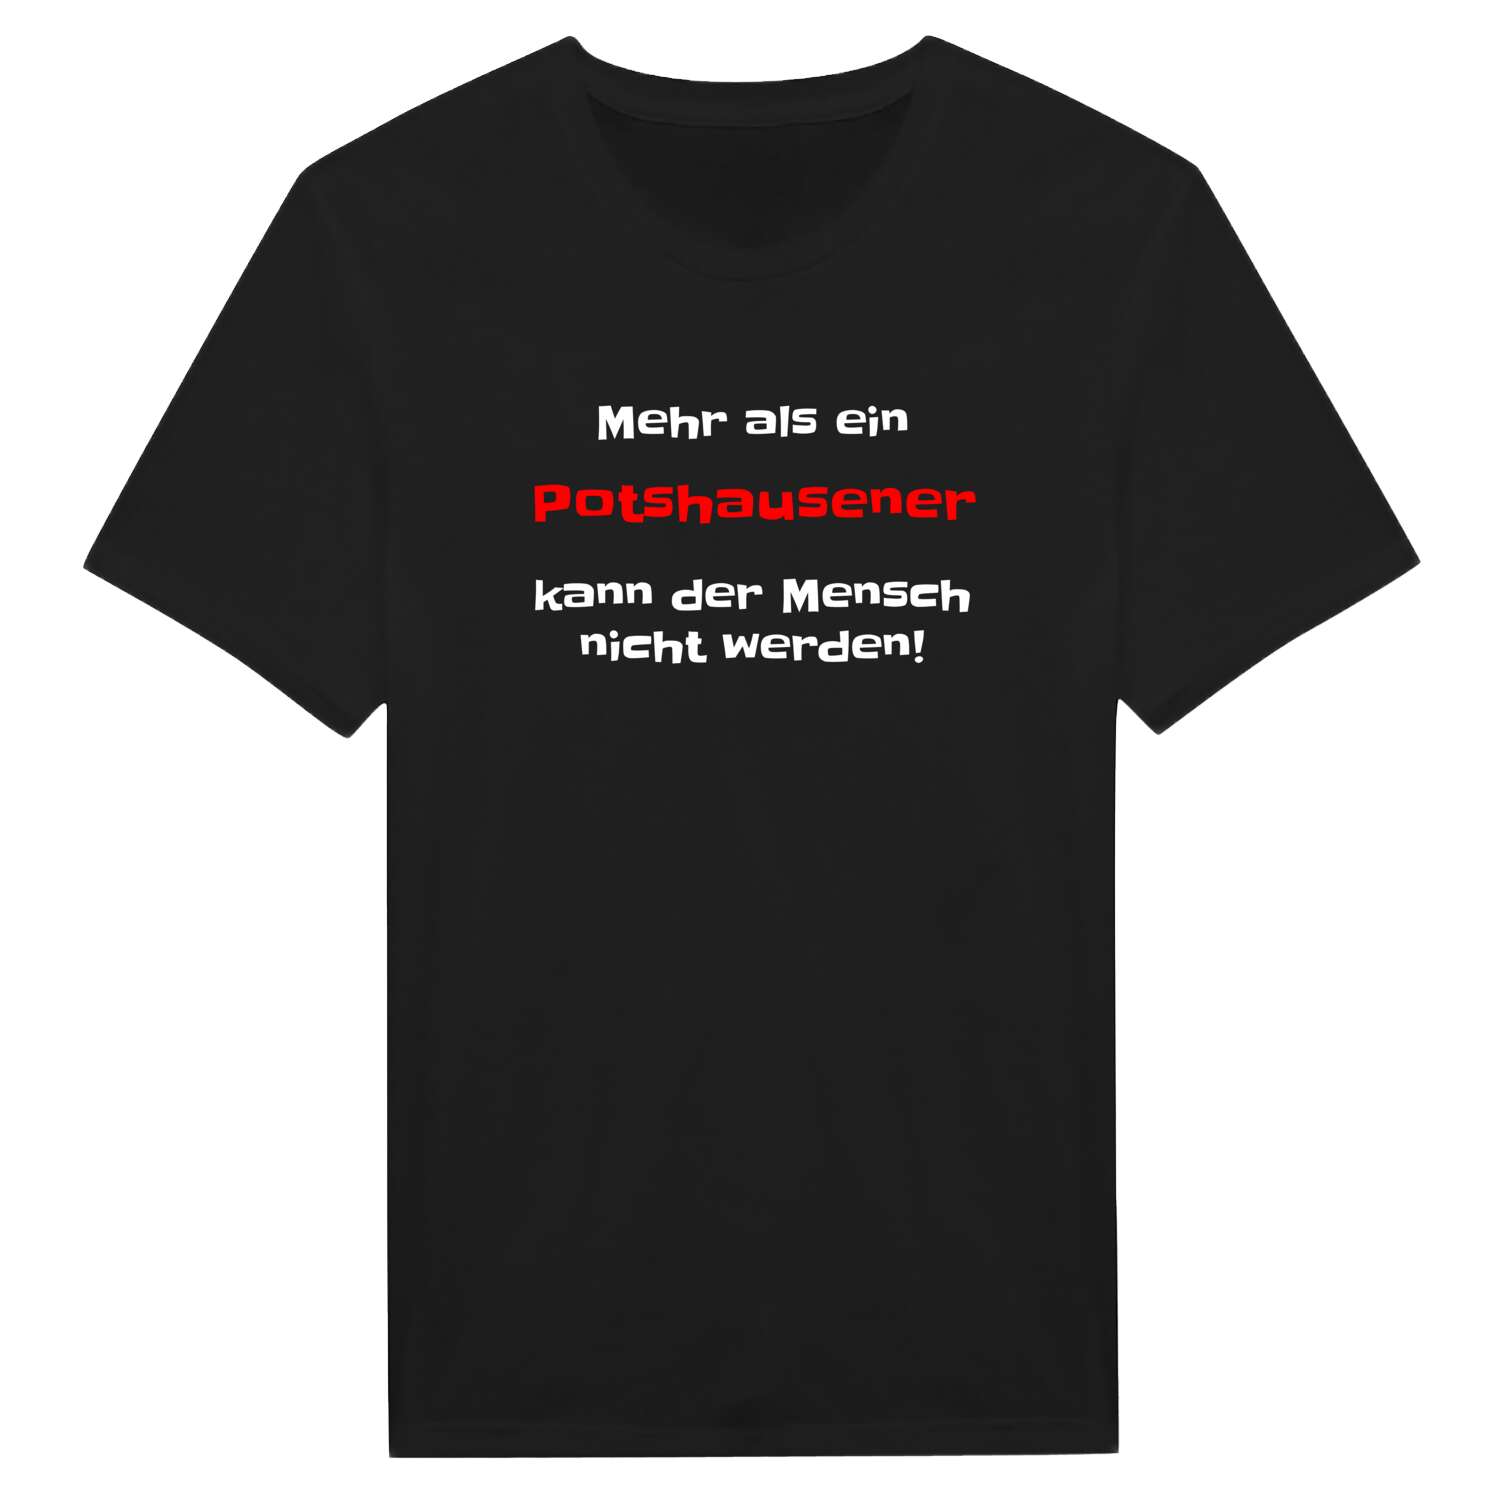 Potshausen T-Shirt »Mehr als ein«